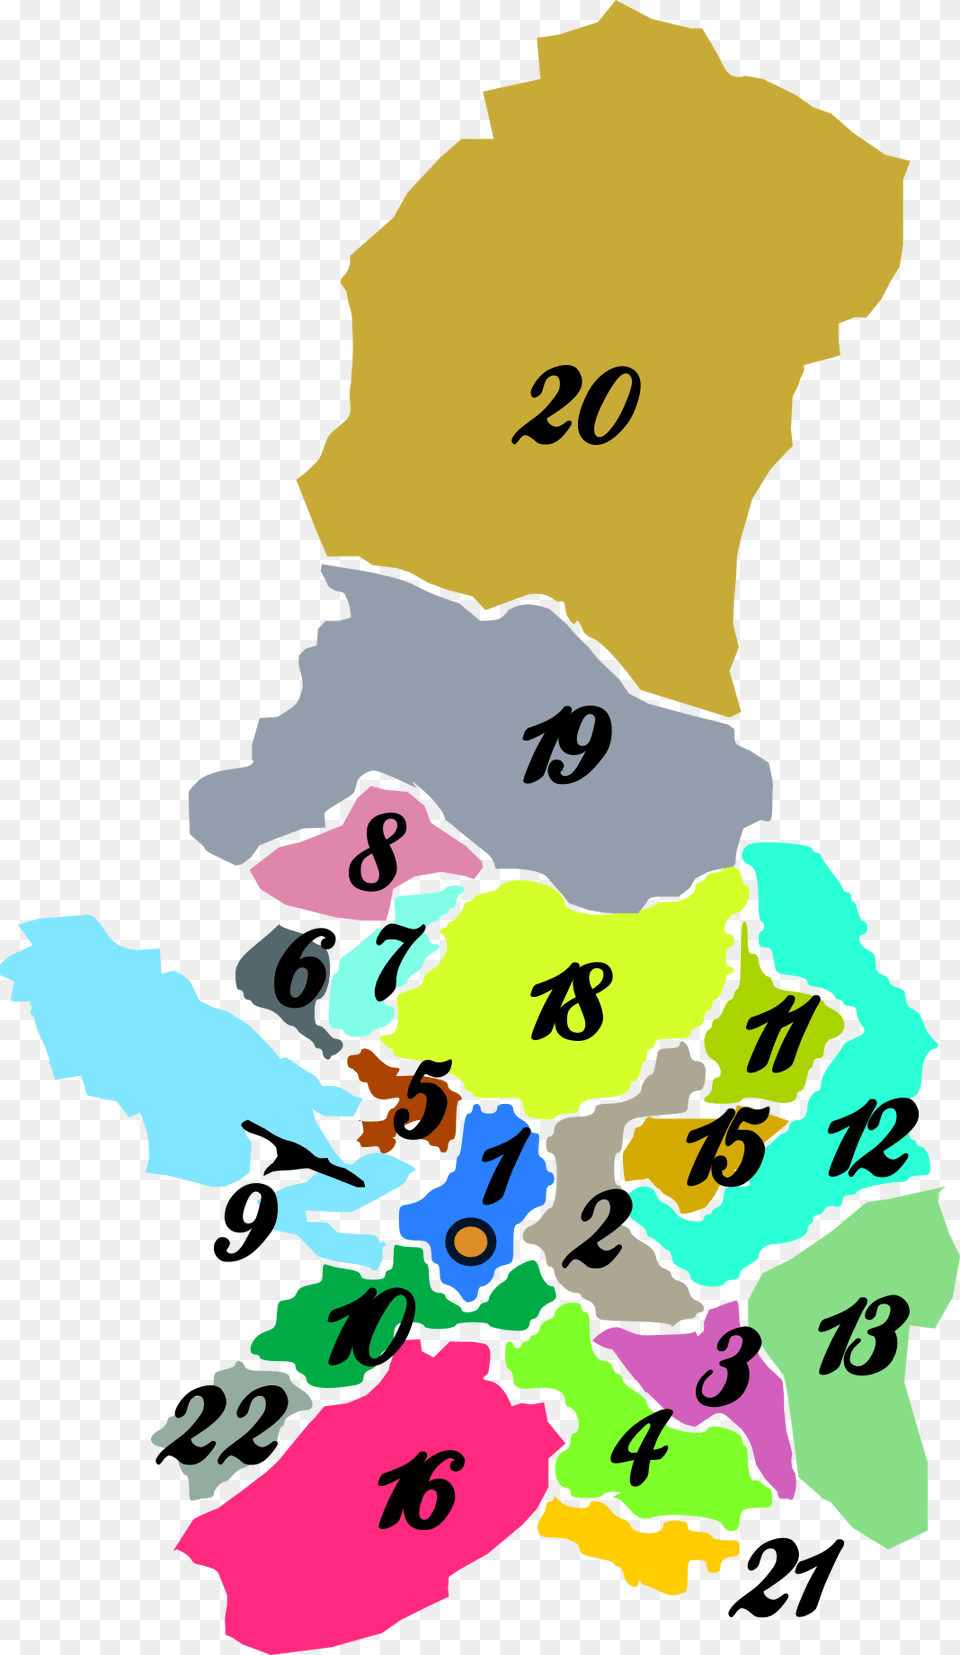 Departemento La Paz Provinces Of La Paz, Chart, Plot, Map, Text Png Image